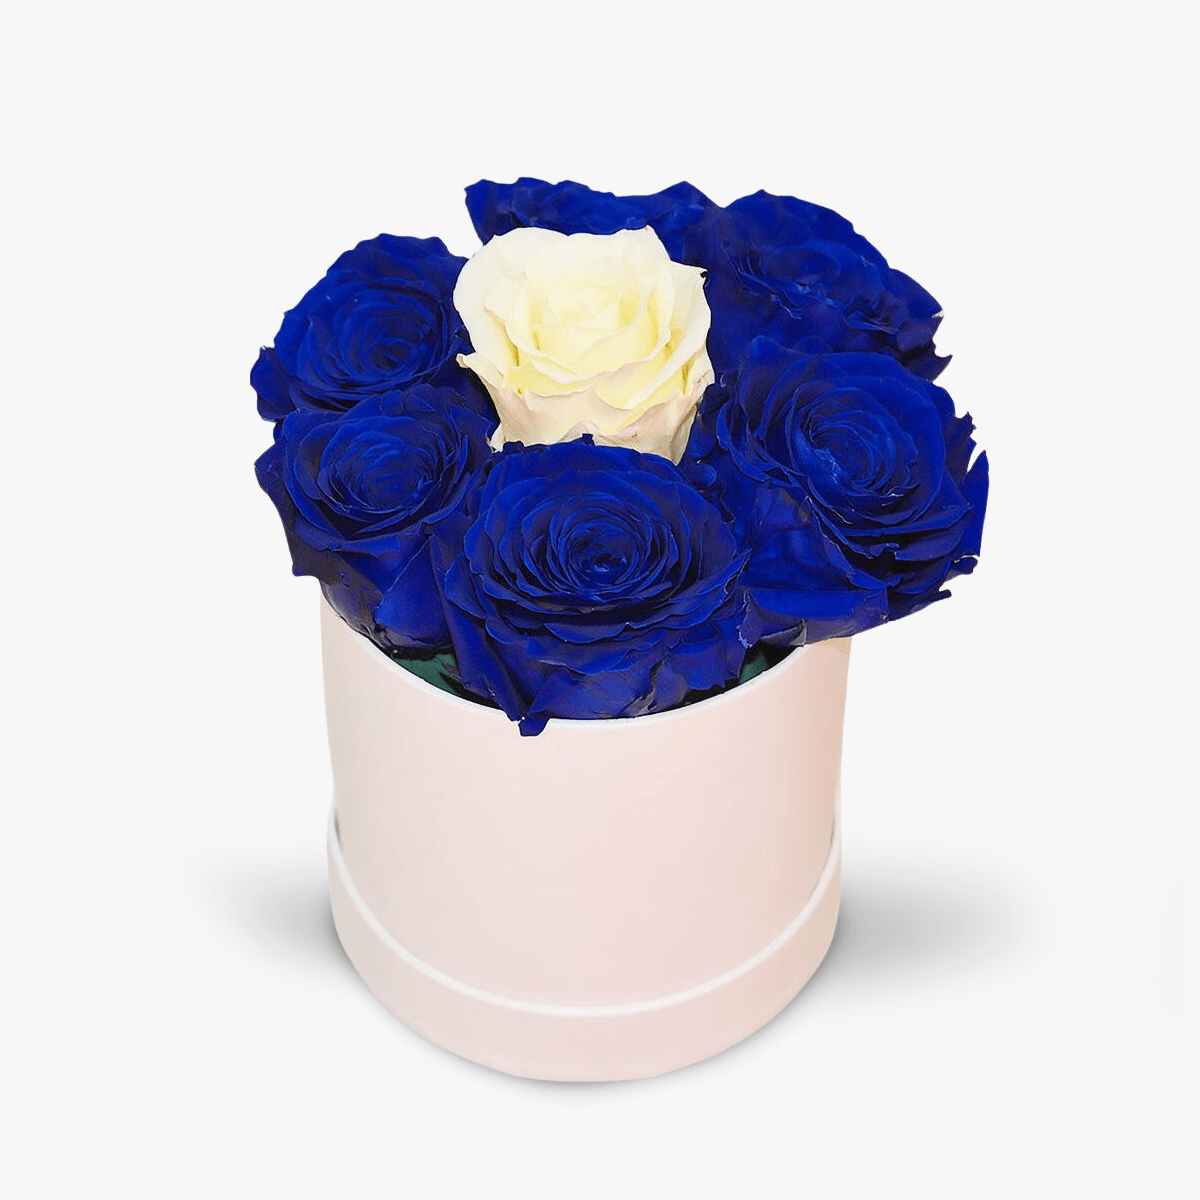 Cutie cu 7 trandafiri, albastri si albi, criogenati - Standard